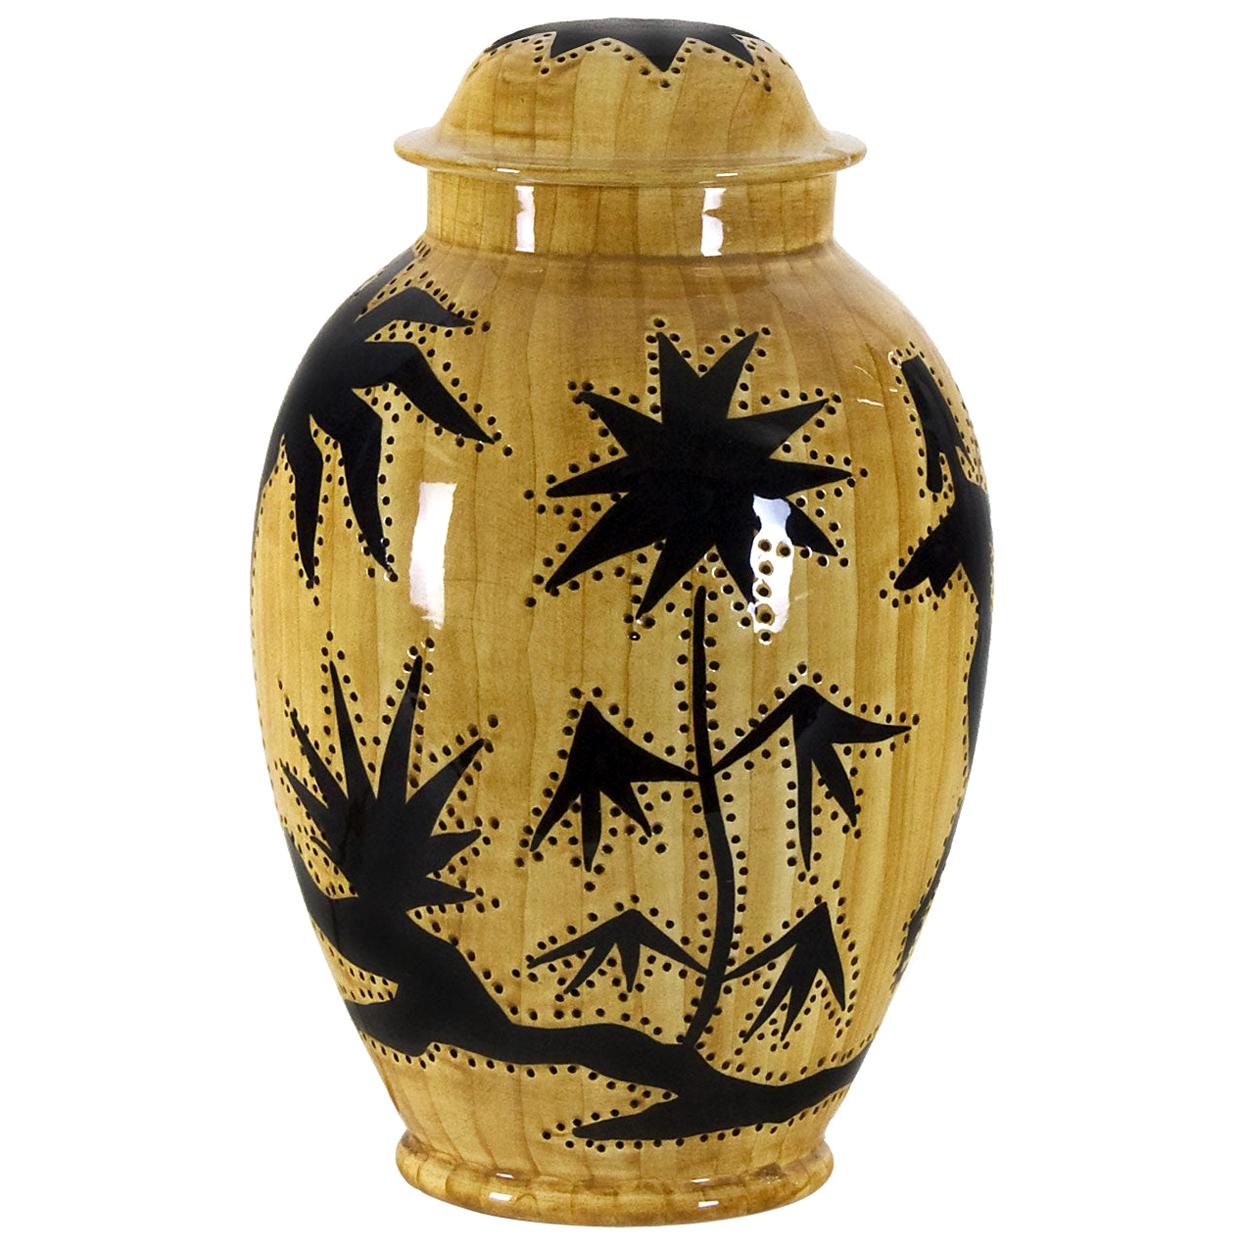 1950s Covered Pot Lamp by Grandjean-Jourdan, Perforated Ceramic, Vallauris